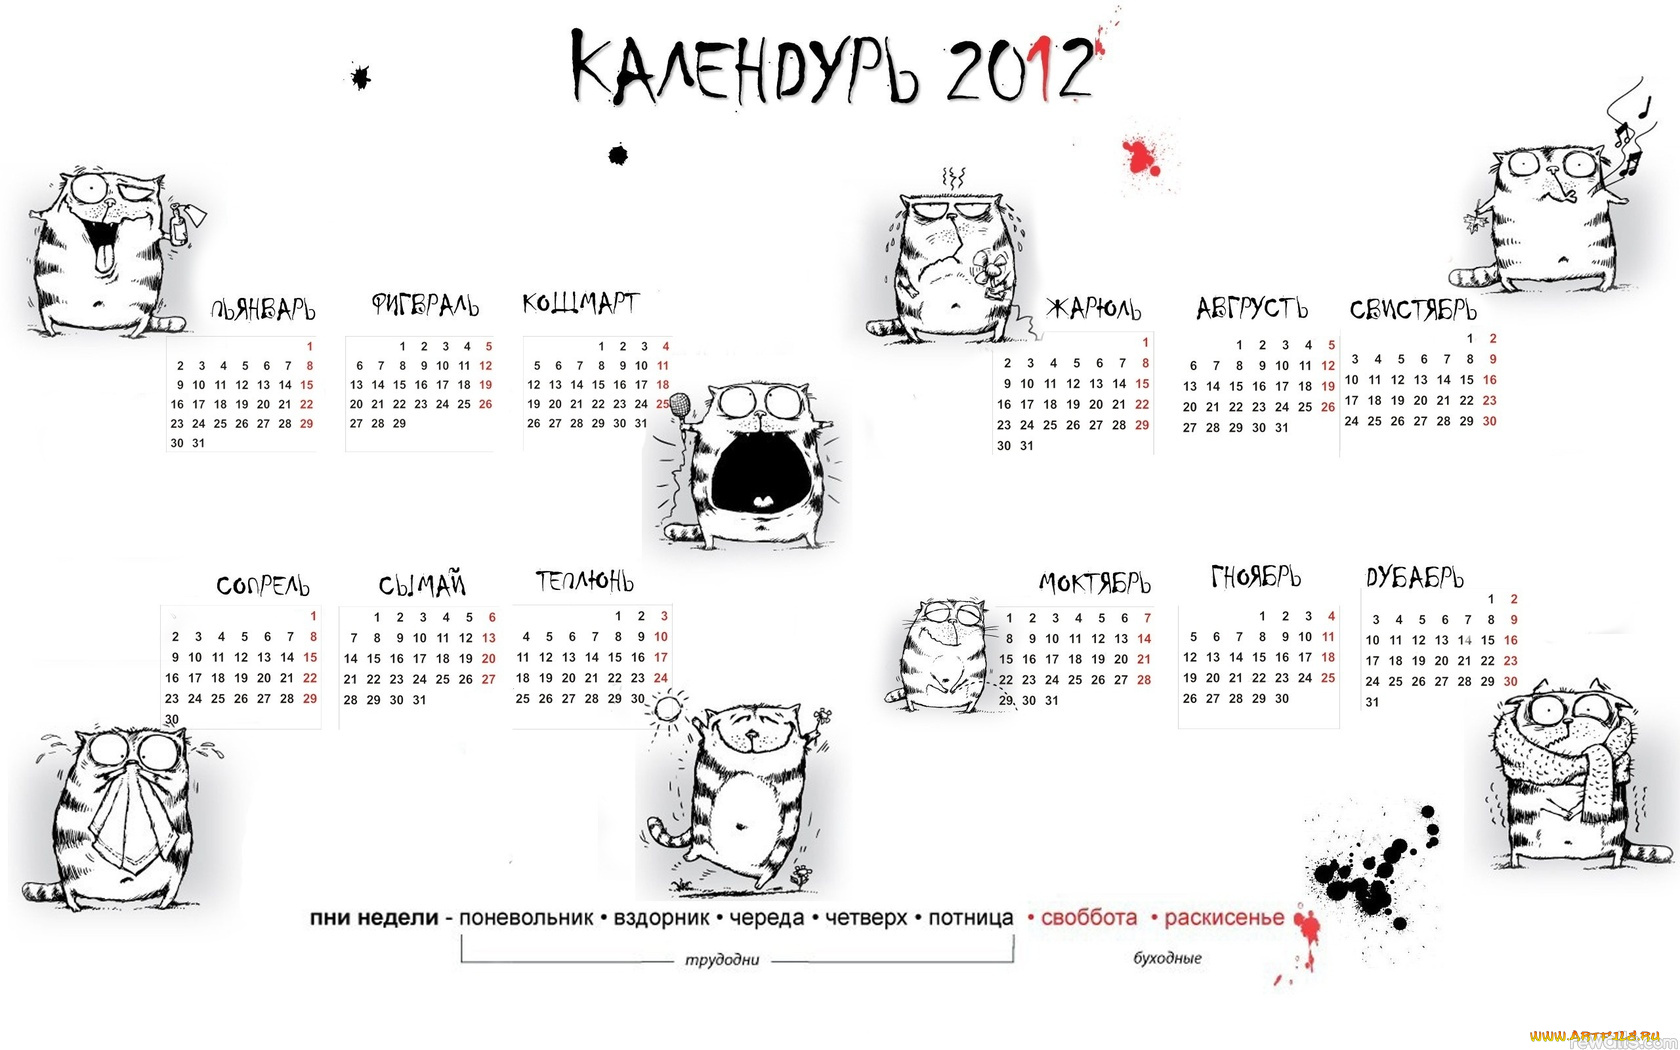 календурь, календари, другое, календарь, 2012, красный, приколы, юмор, кот, рисованые